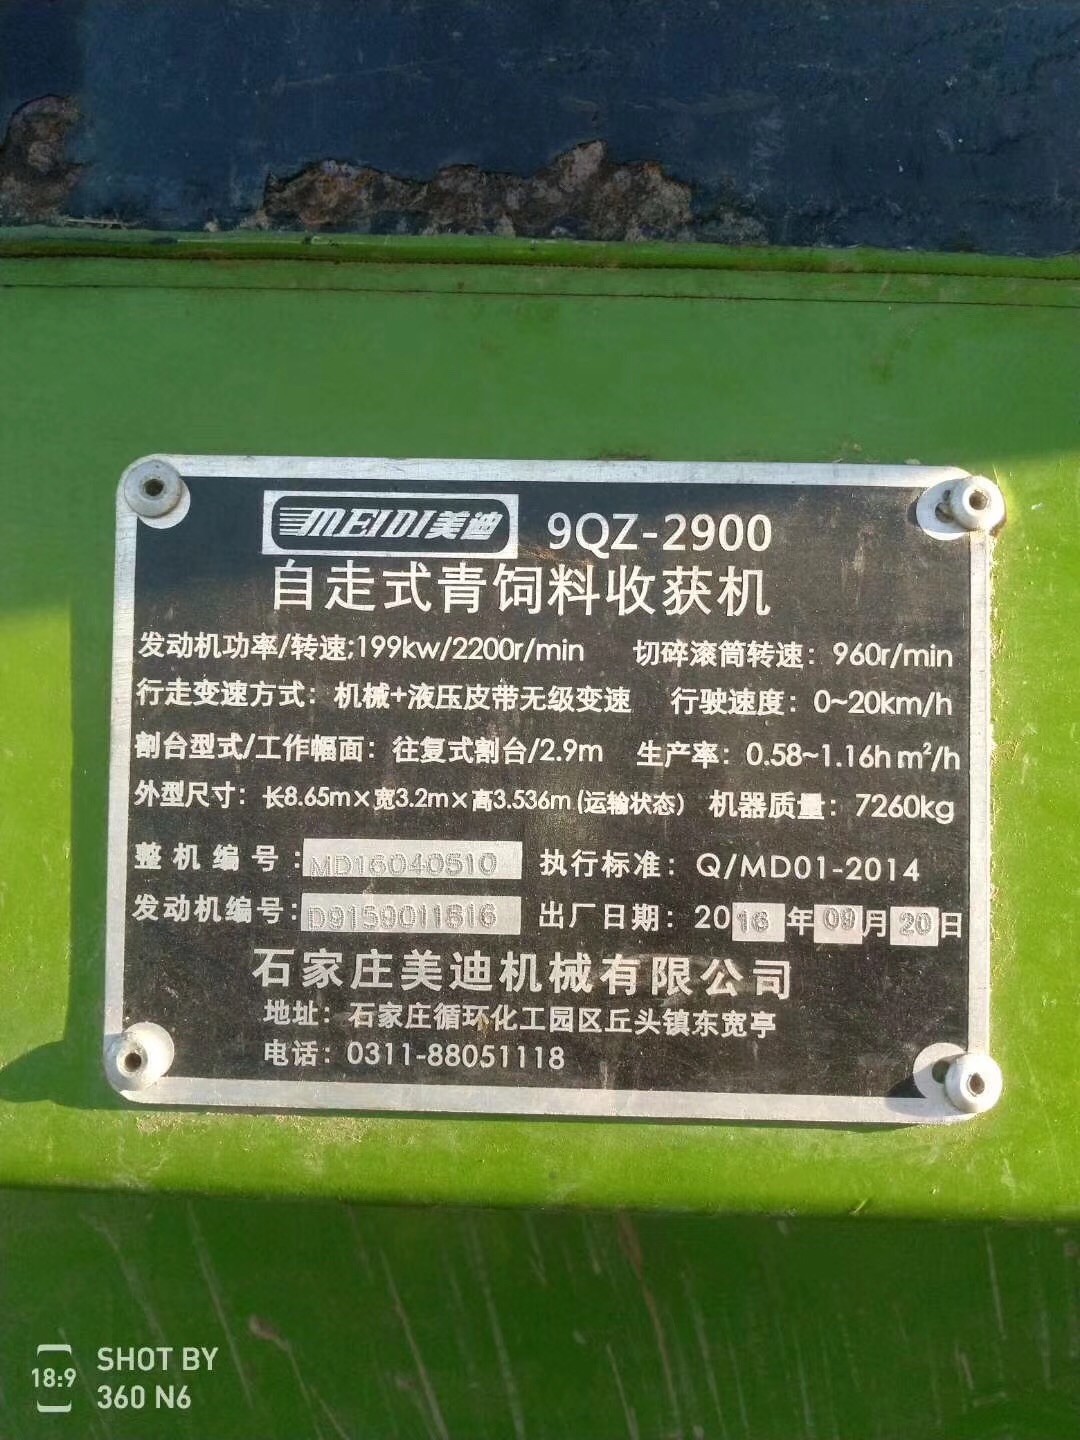 美迪9QZ-2900B青储机